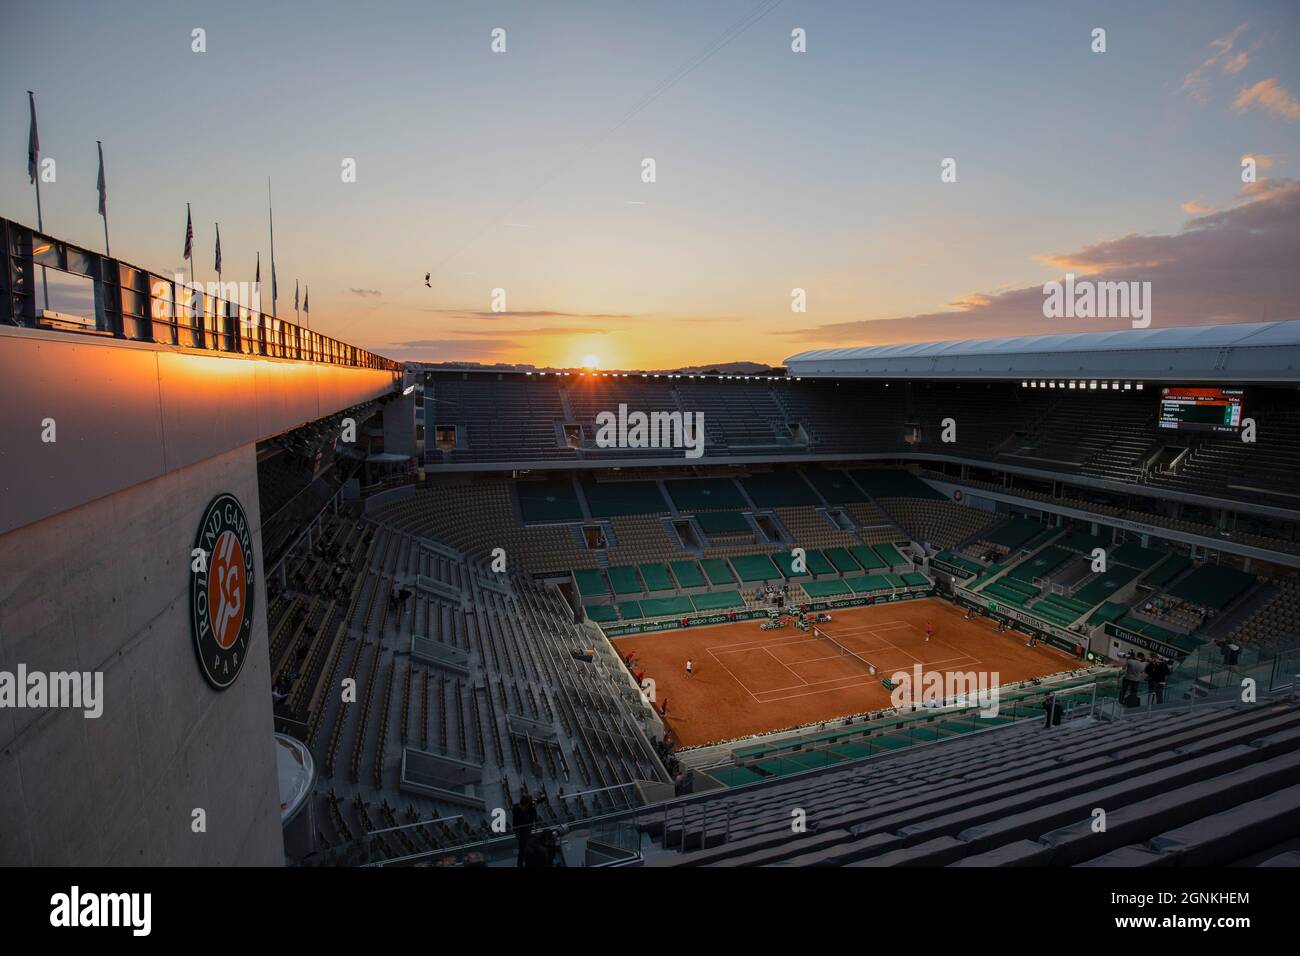 French Open Feature, coucher de soleil sur court Philippe Chatrier, tournoi de tennis French Open 2021, Paris, France. Banque D'Images